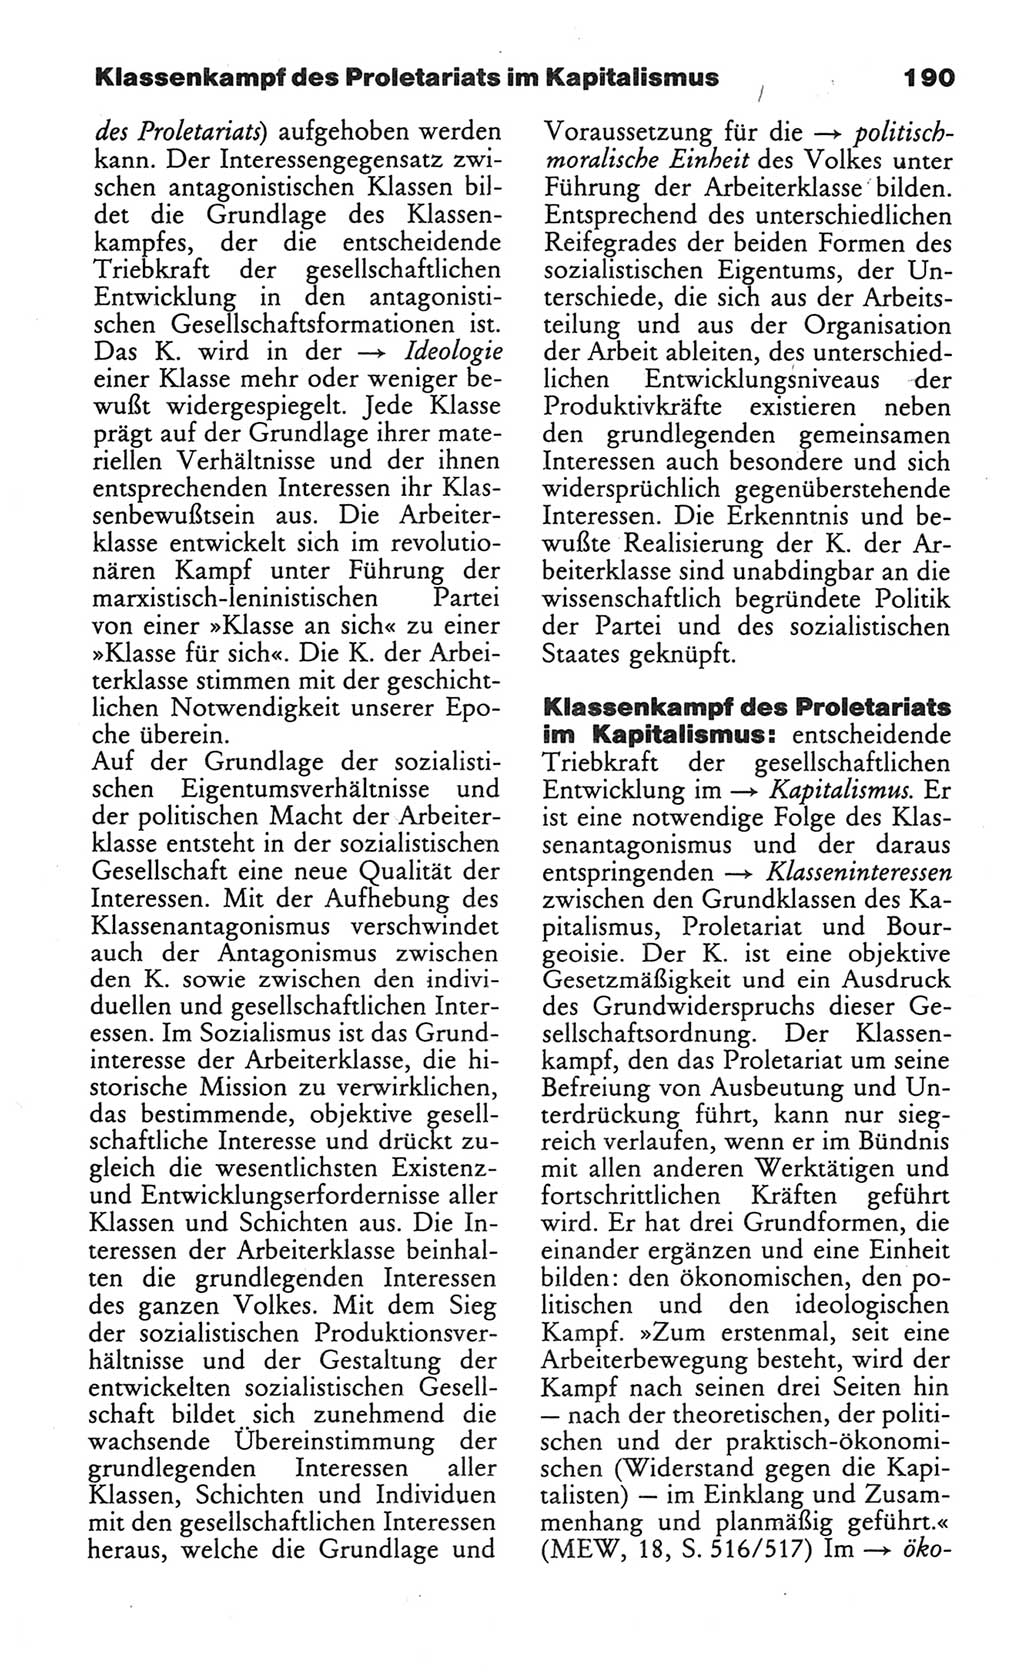 Wörterbuch des wissenschaftlichen Kommunismus [Deutsche Demokratische Republik (DDR)] 1984, Seite 190 (Wb. wiss. Komm. DDR 1984, S. 190)